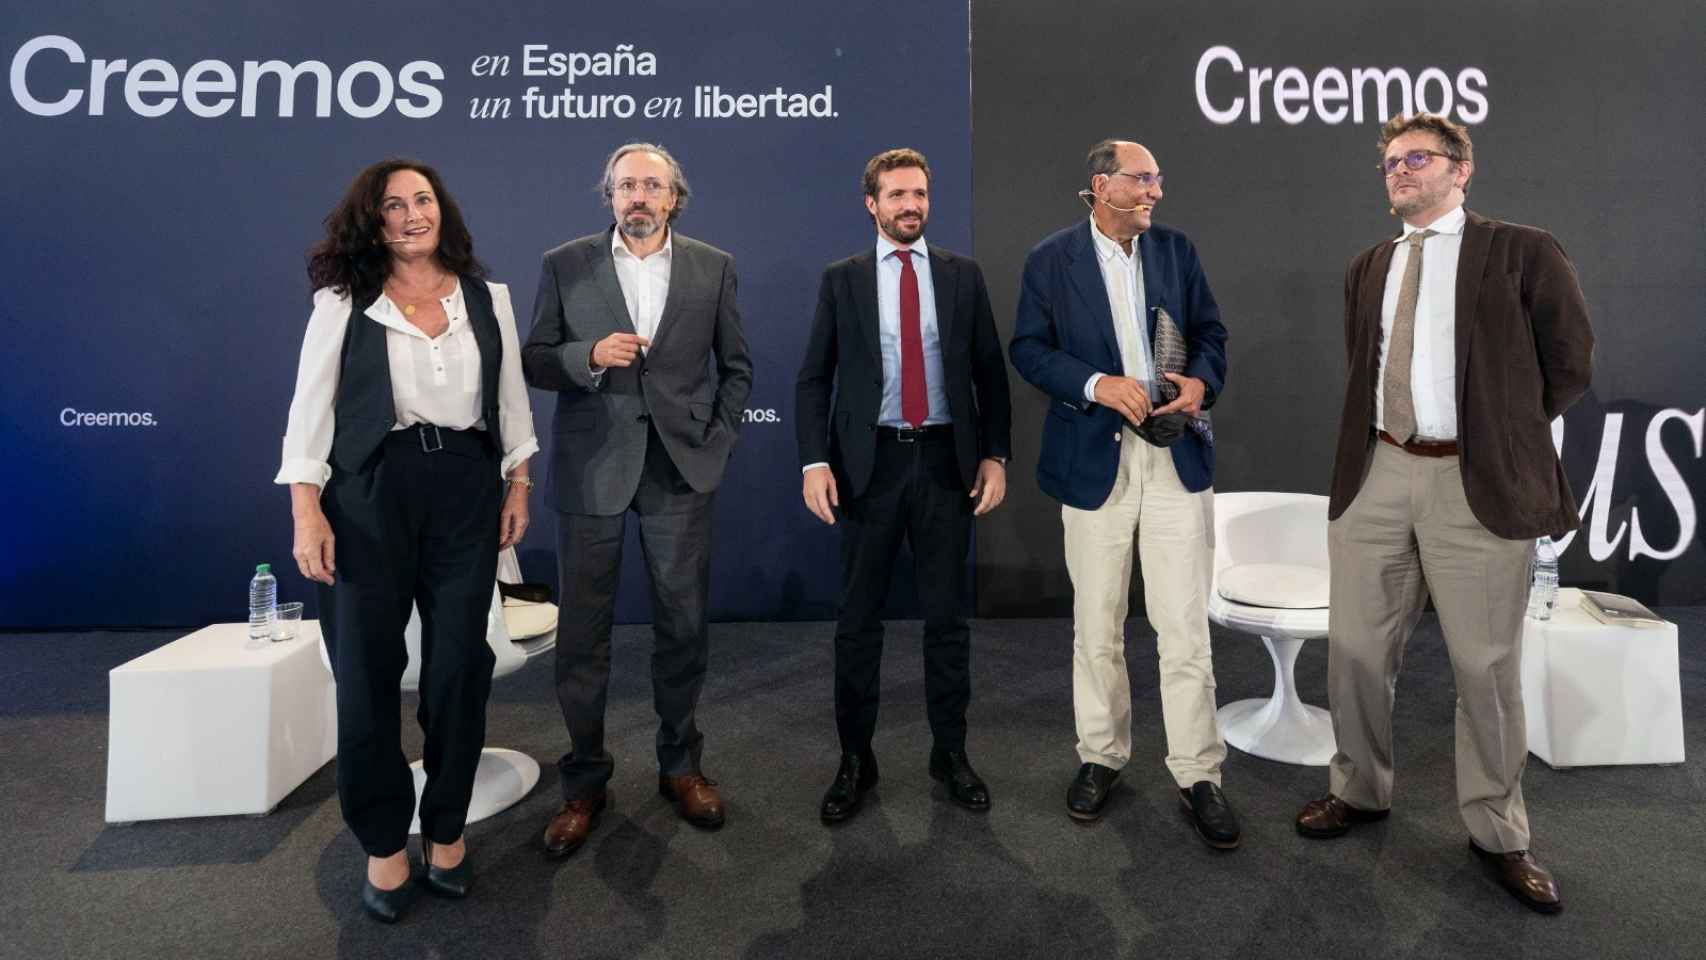 Edurne Uriarte, Girauta, Casado, Vidal-Quadras y Juan Claudio de Ramón, tras el coloquio.